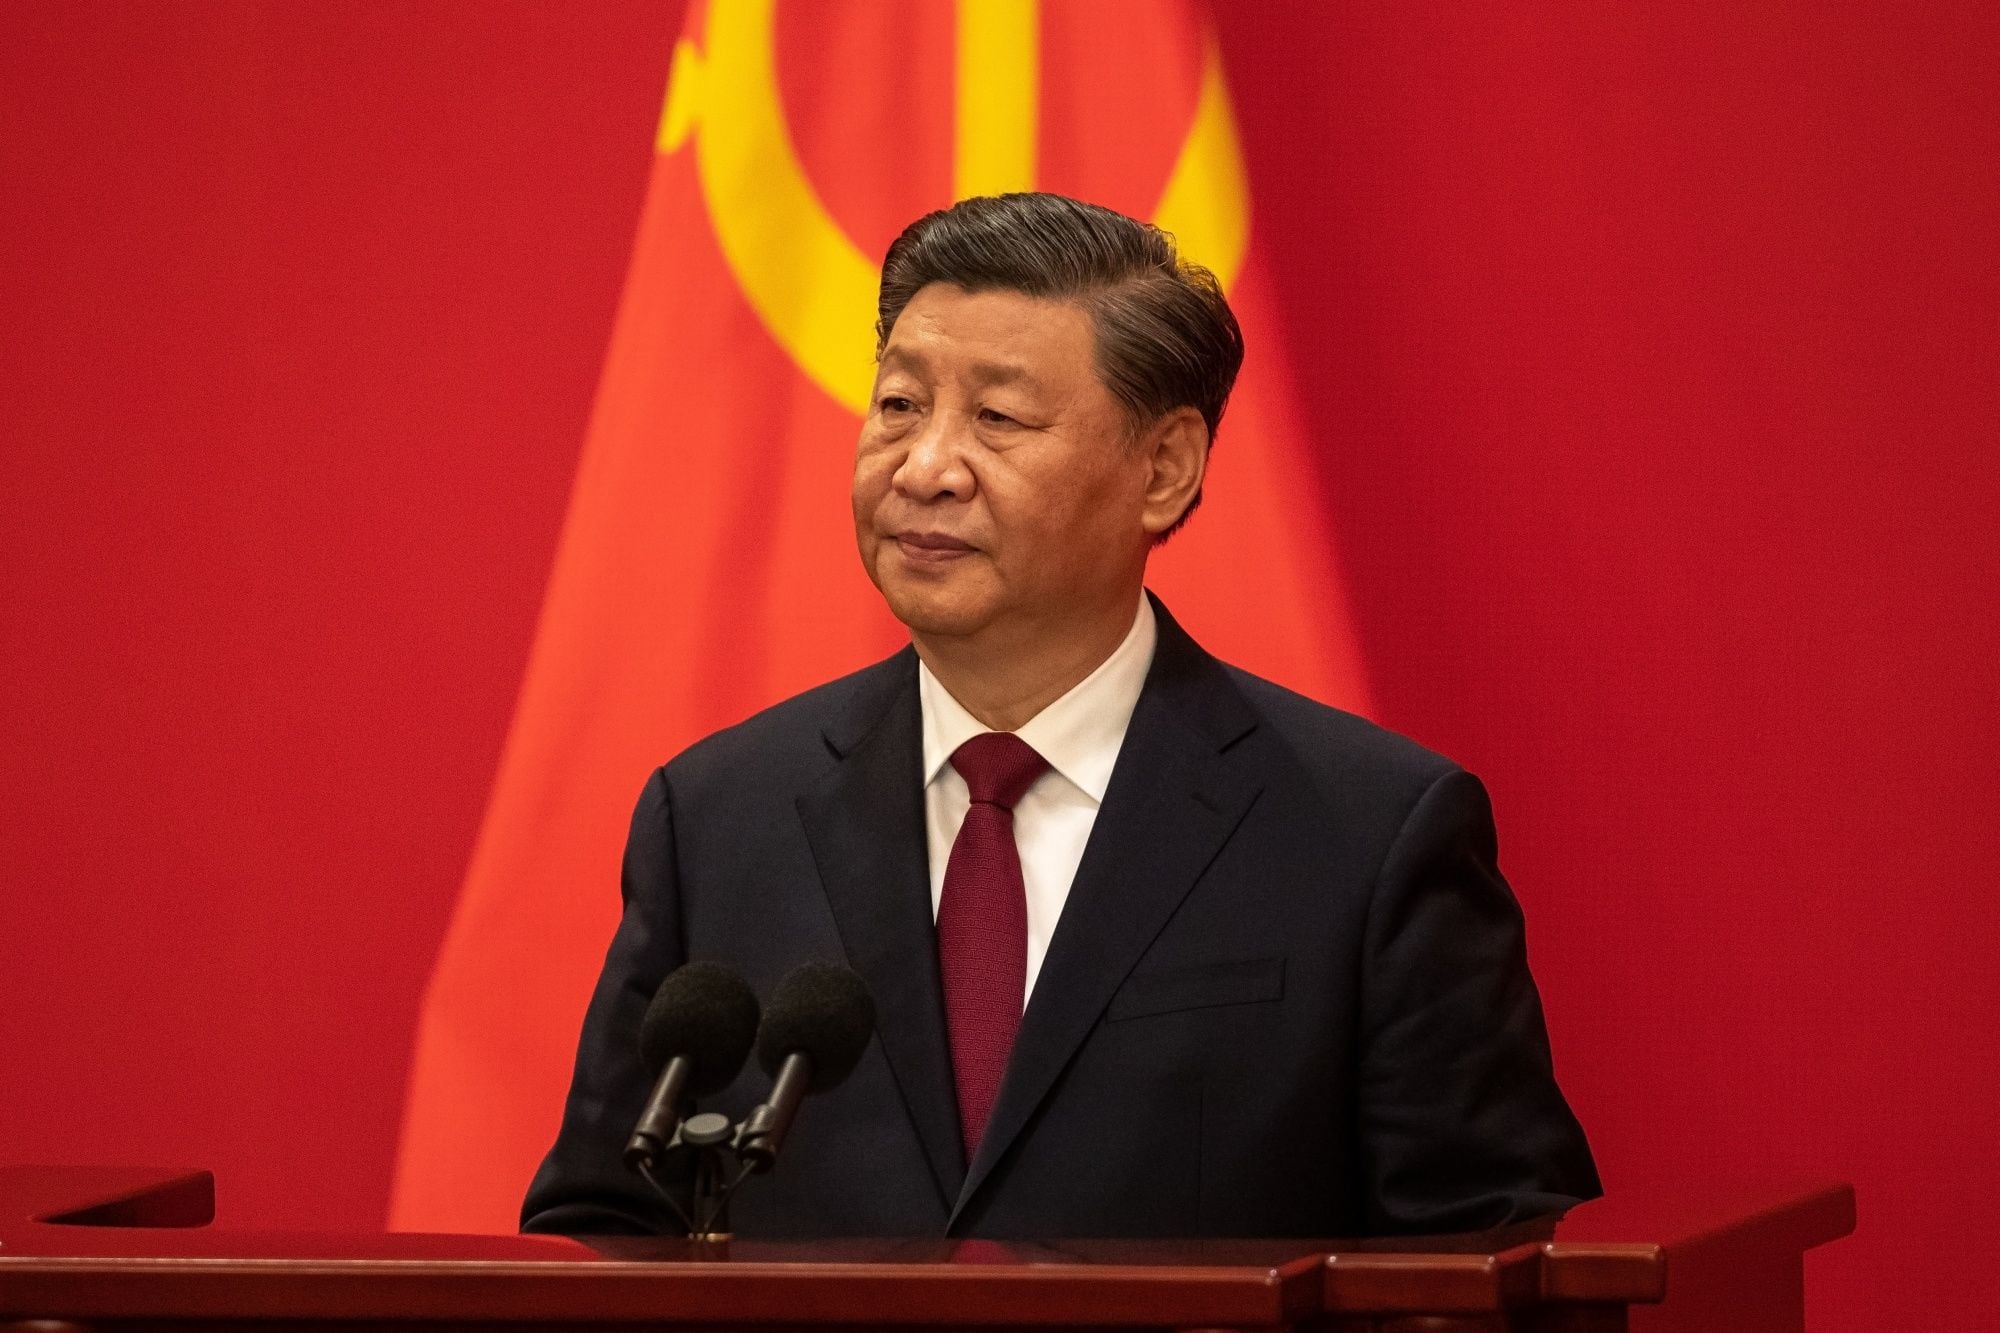 En medio de las dificultades económicas que afronta China, Xi Jinping pidió paciencia y perseverancia para alcanzar la “prosperidad común” (Bloomberg)